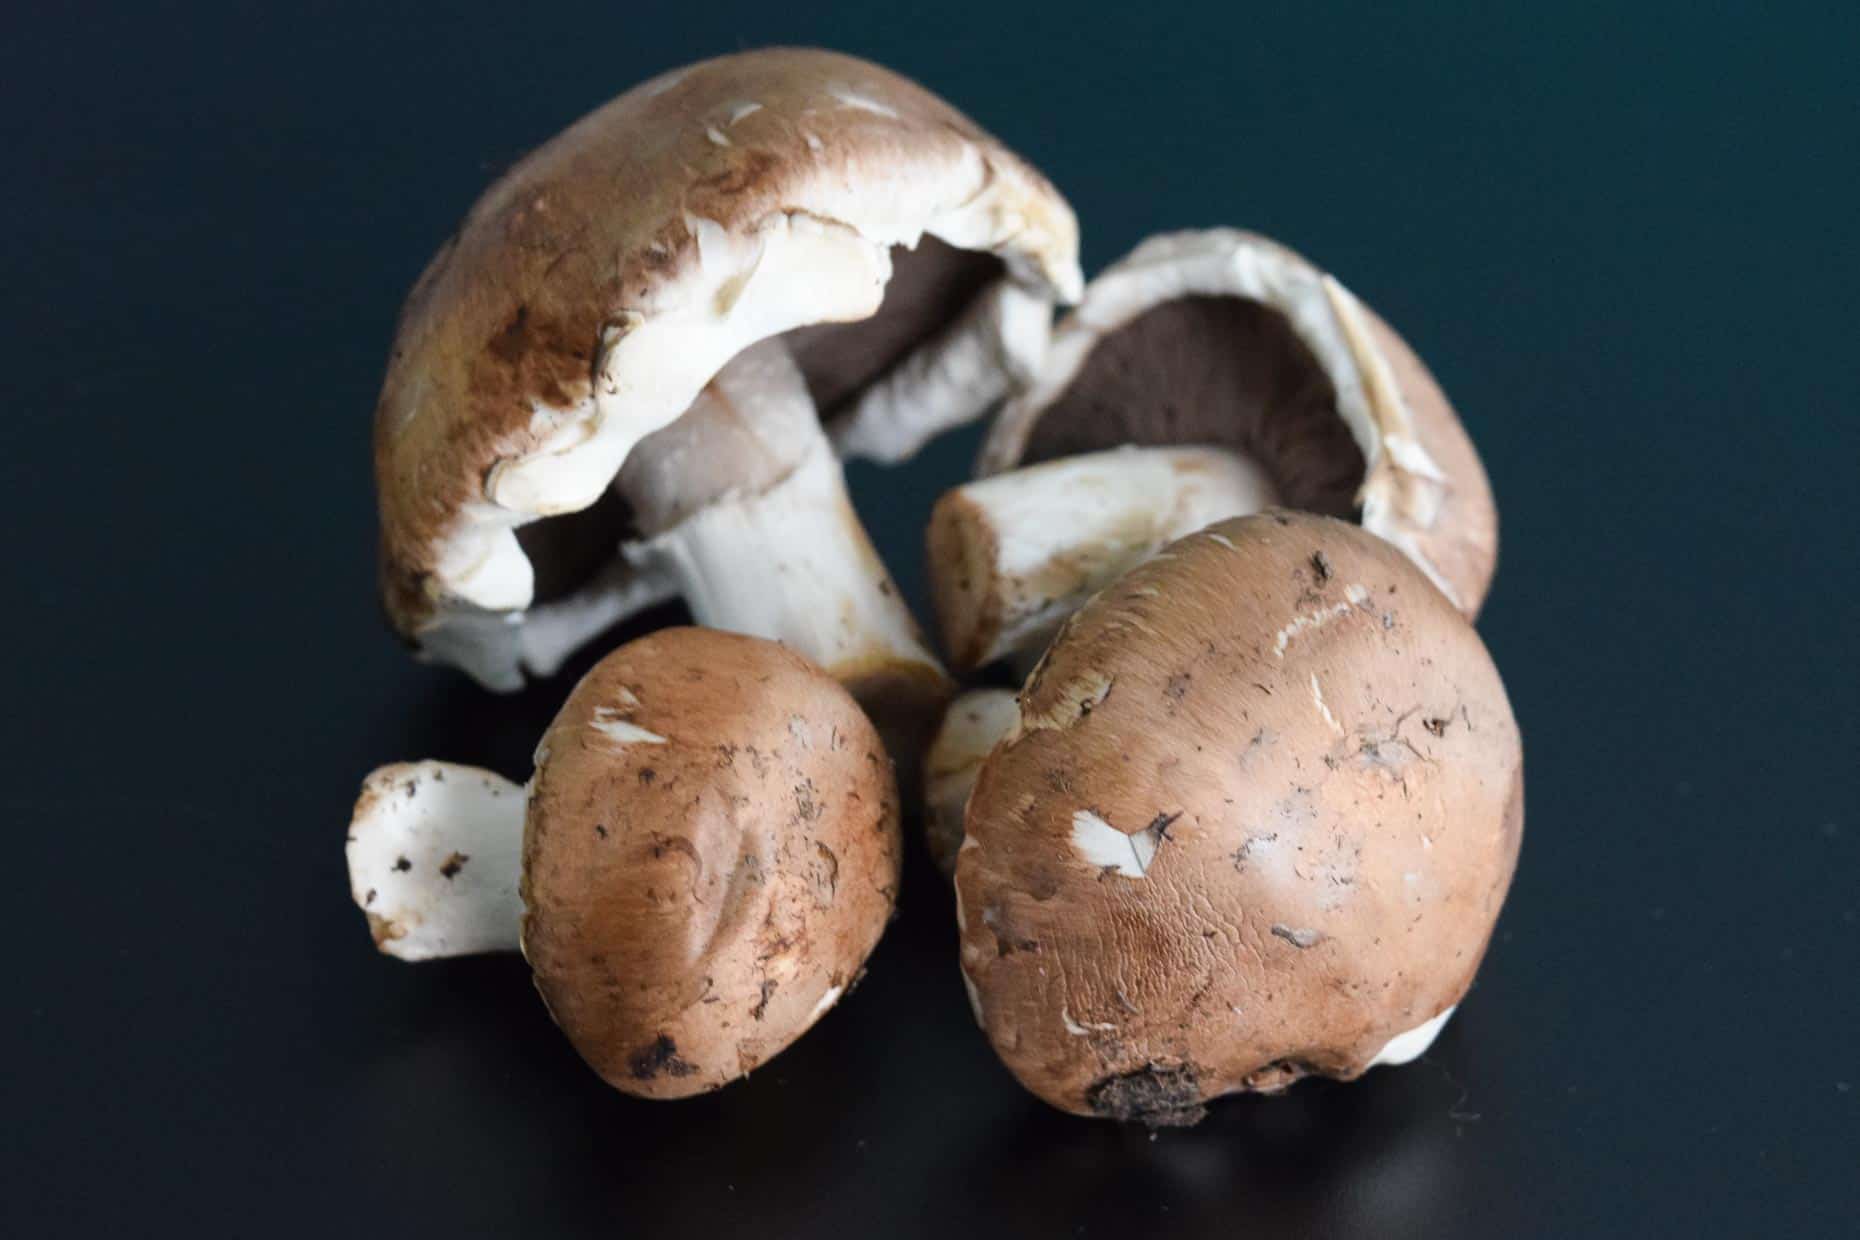 Mushrooms on black background